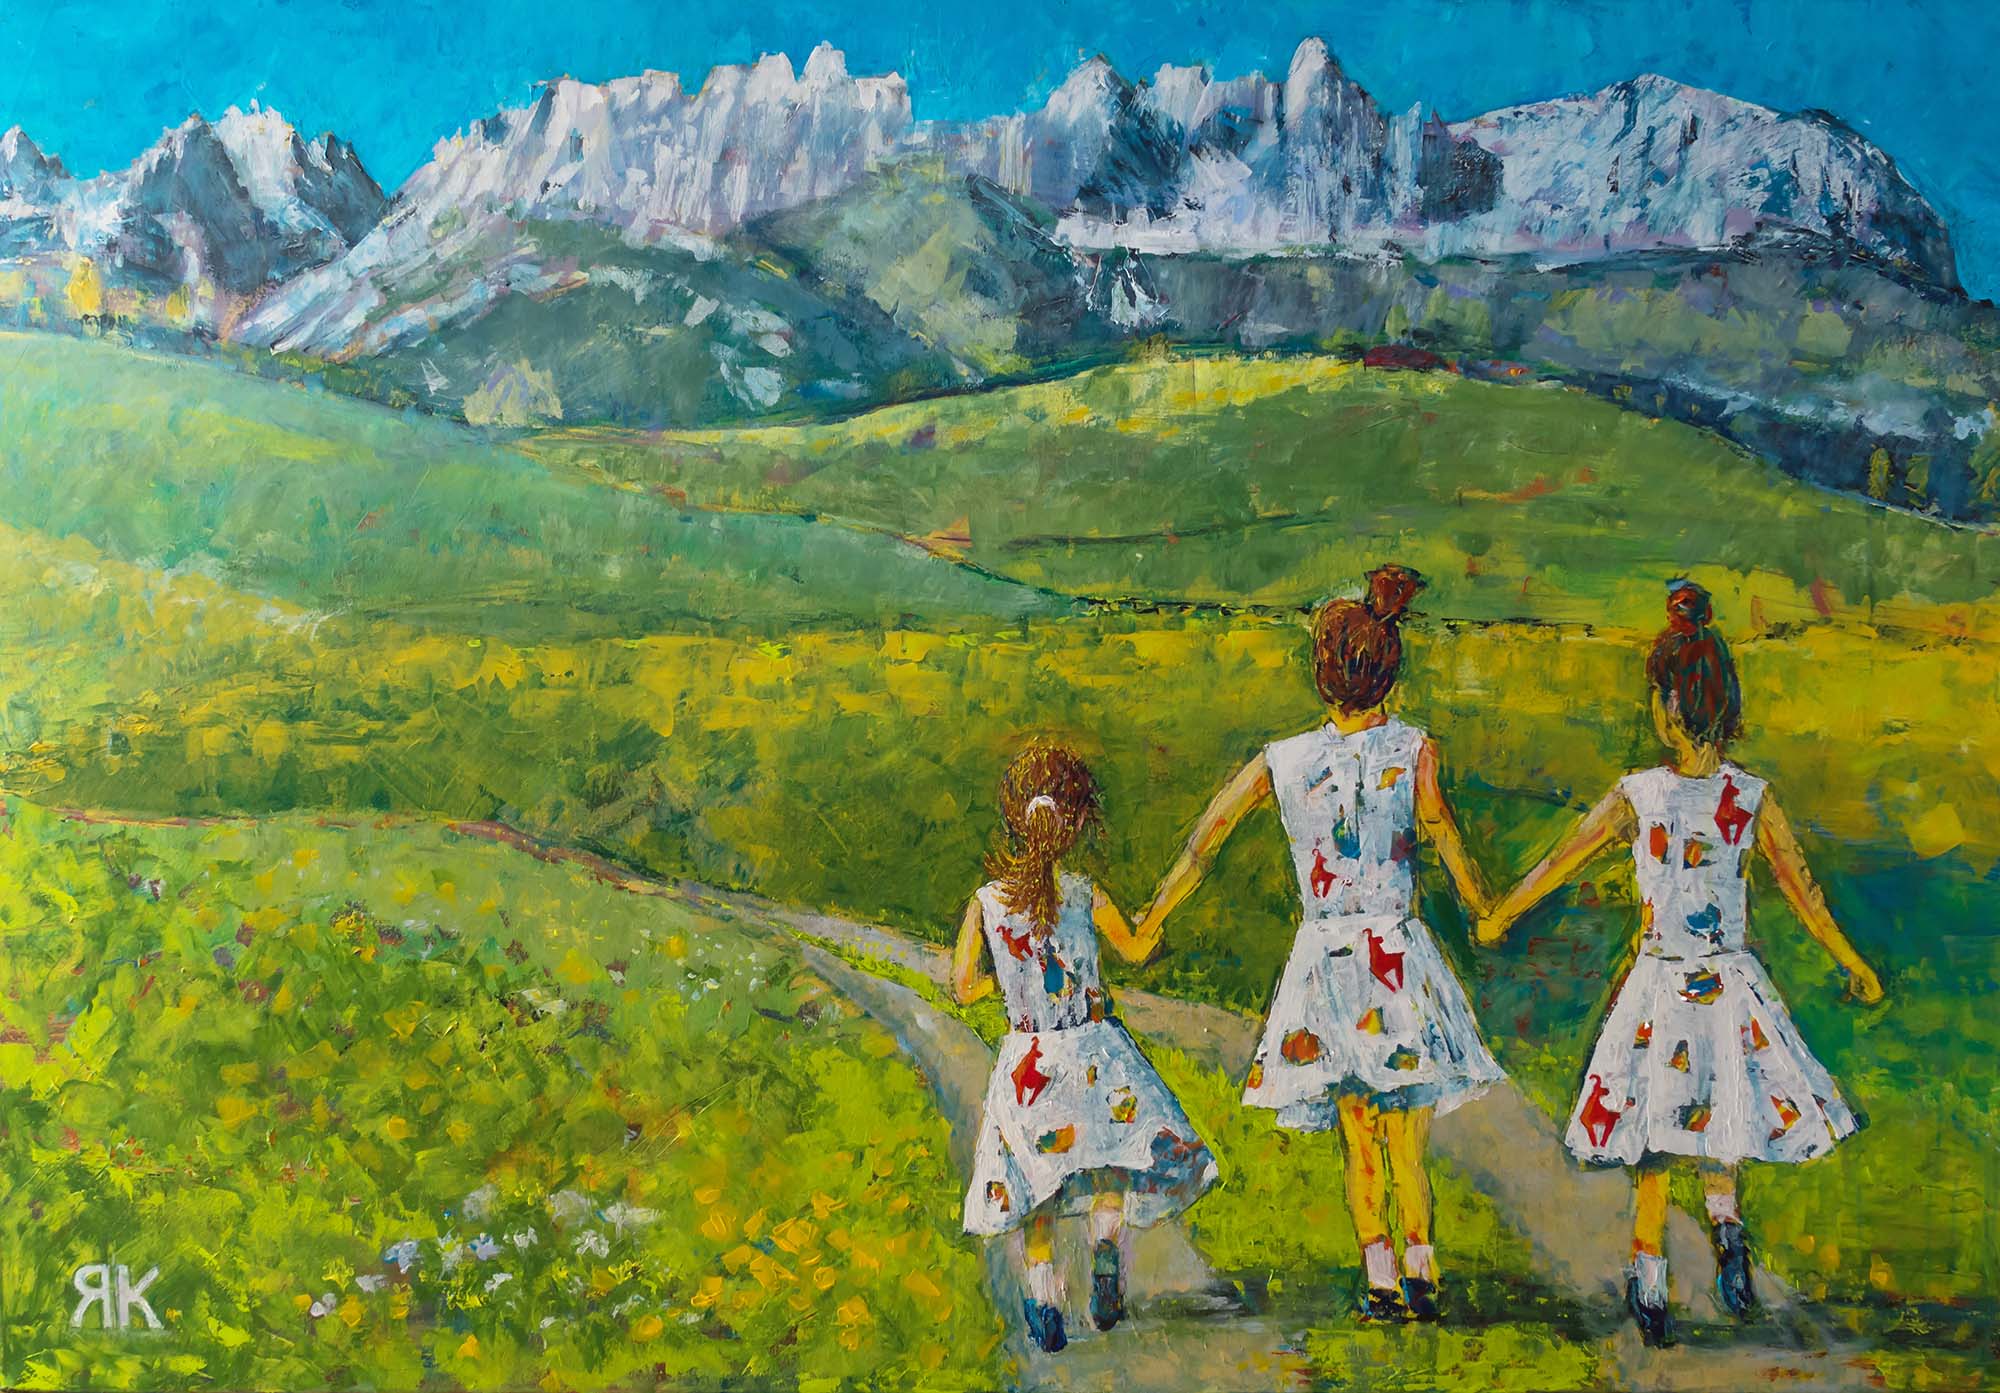 Girls walking on green summer lawn under the mountain range Wilder Kaiser, Tyrol, Austria by Ria Kieboom